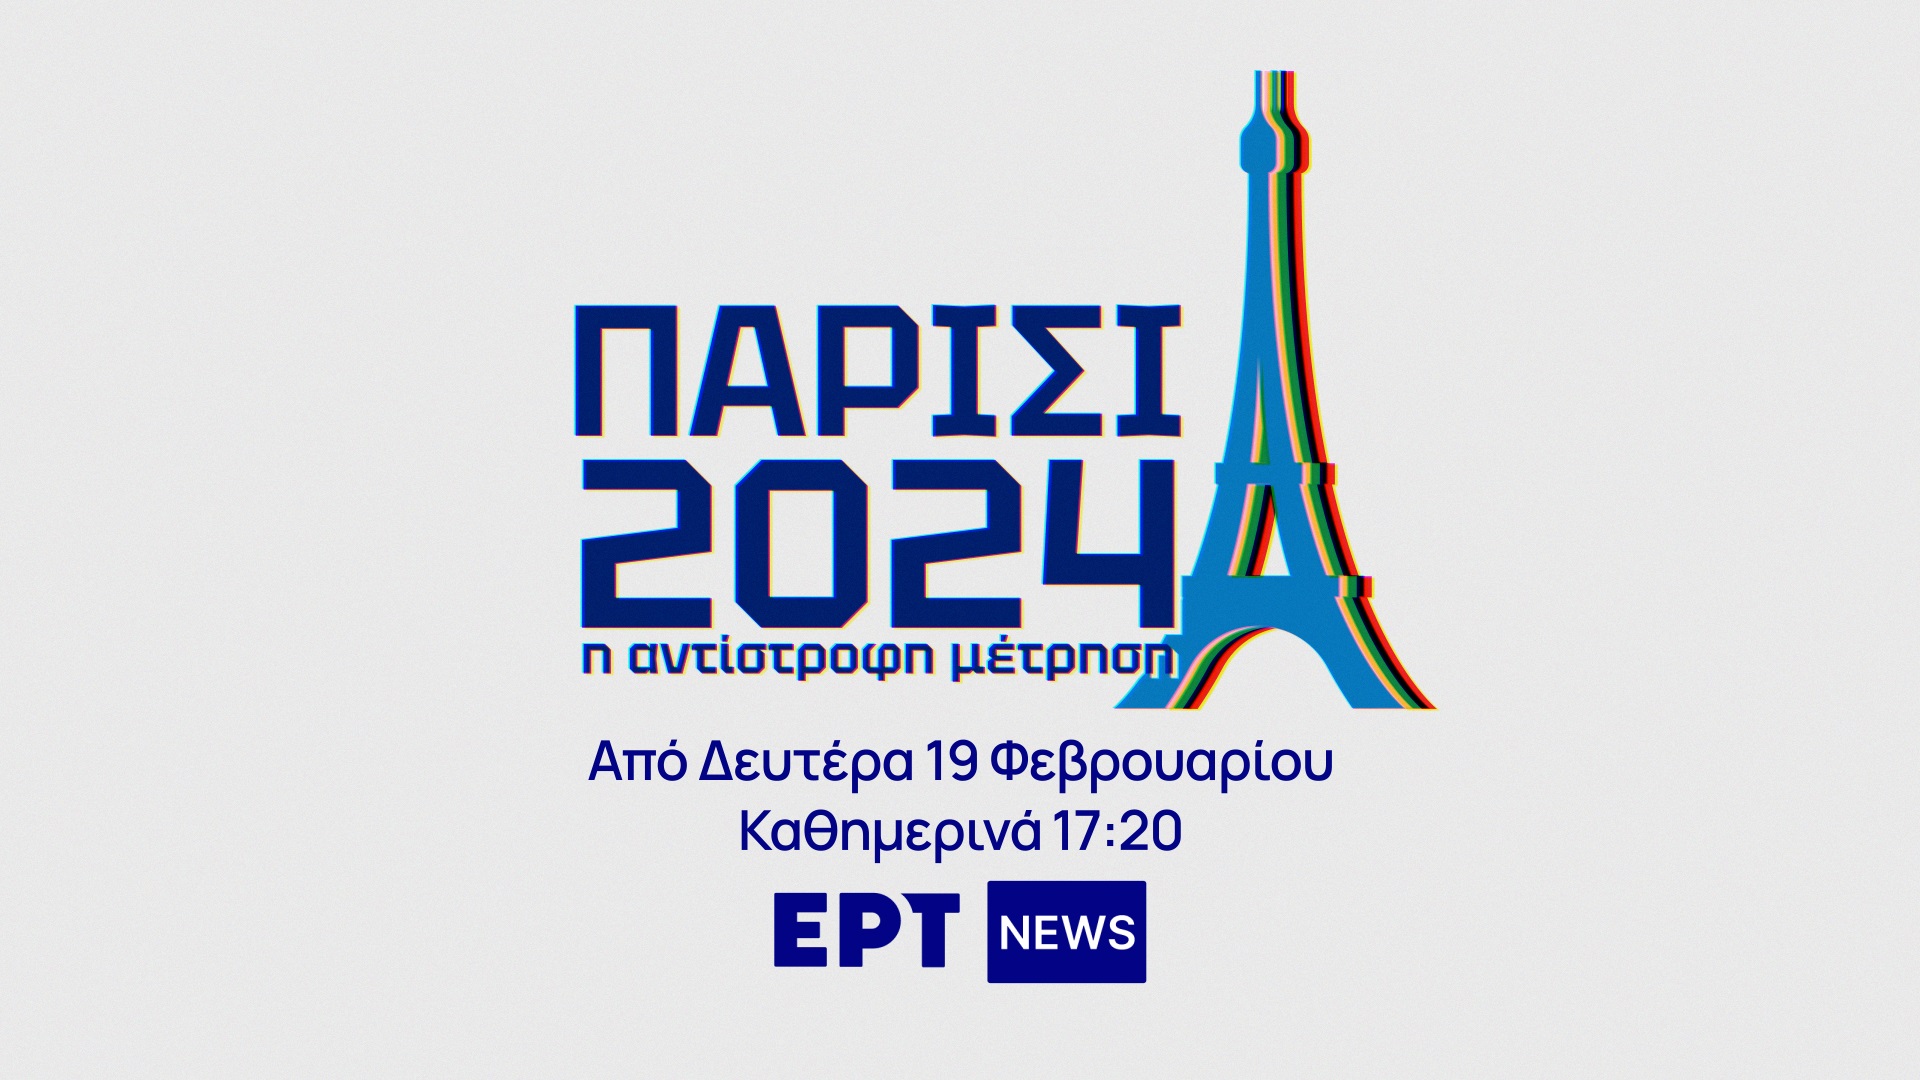 ΕΡΤ NEWS - «Παρίσι 2024: Η αντίστροφη μέτρηση»